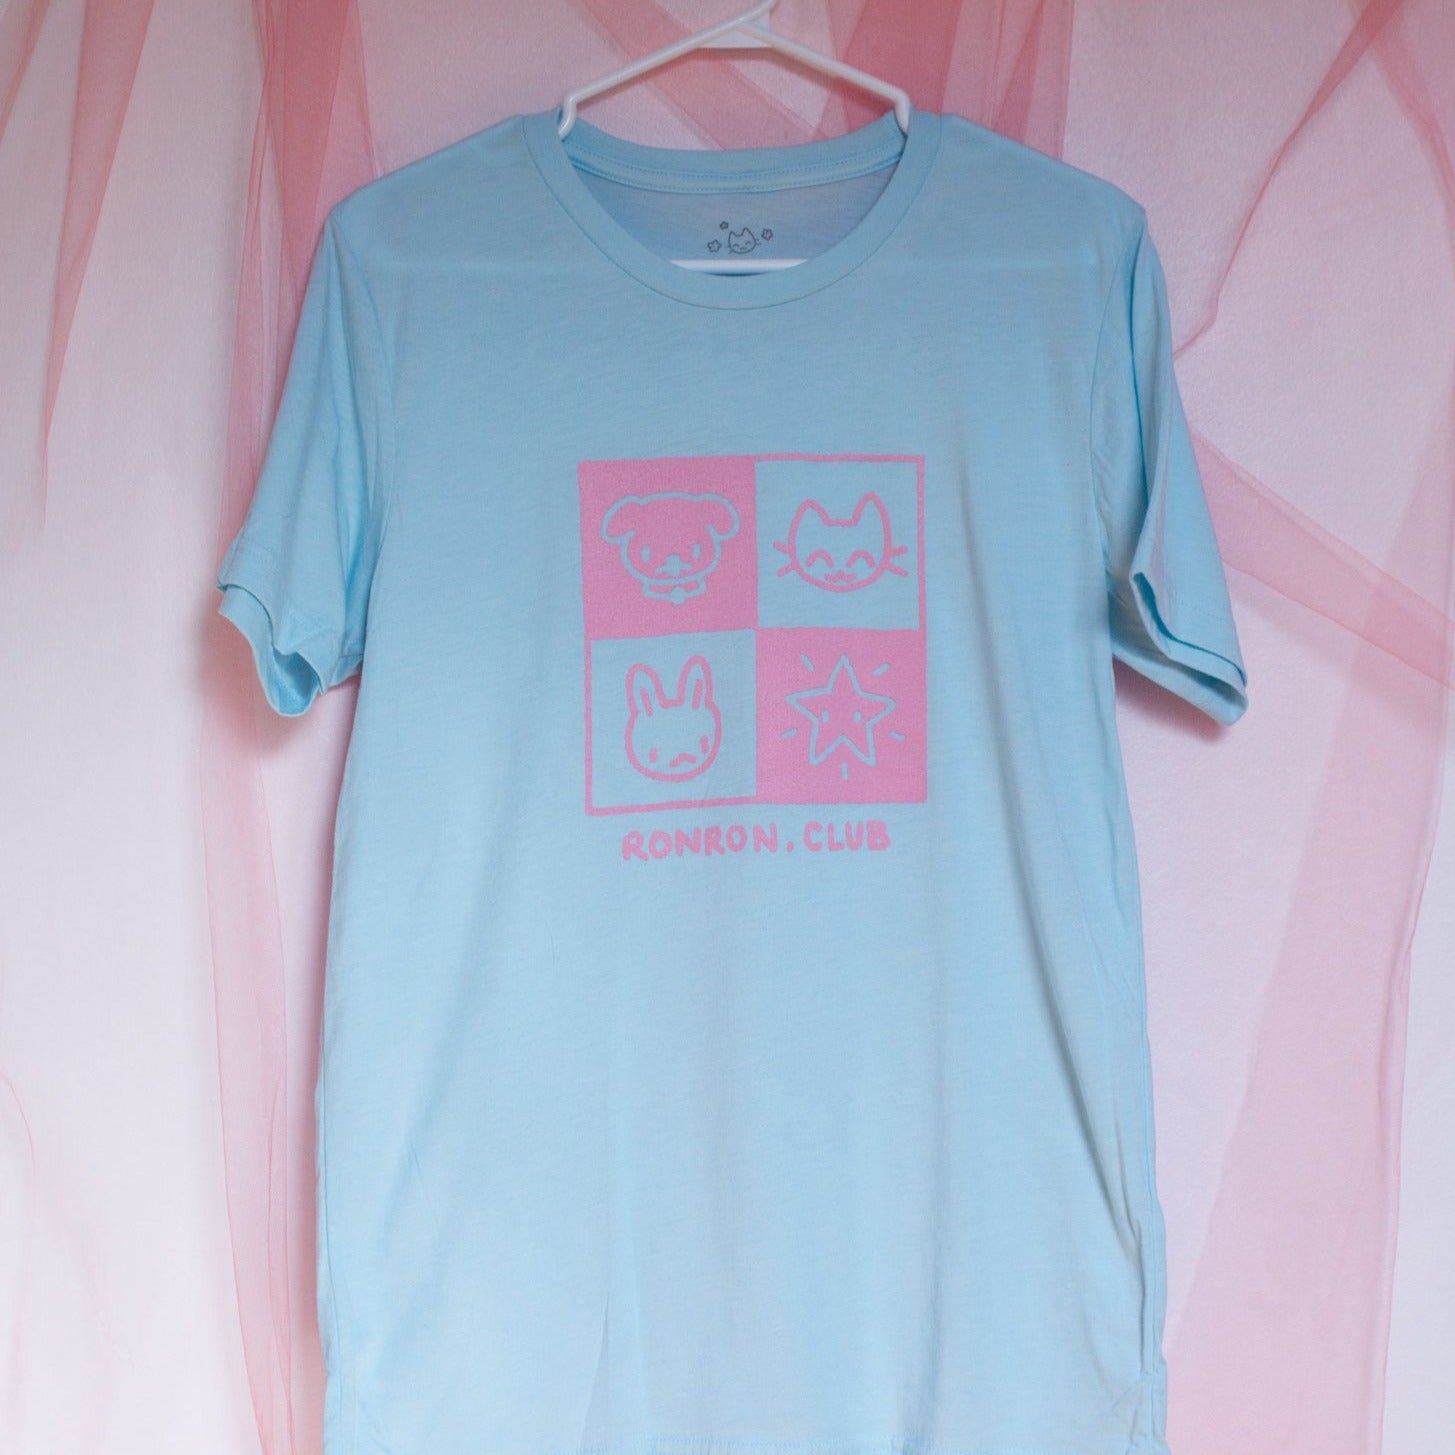 Photo du t-shirt bleu pâle avec imprimé rose "Ronron.club" avec petits animaux et une étoiles